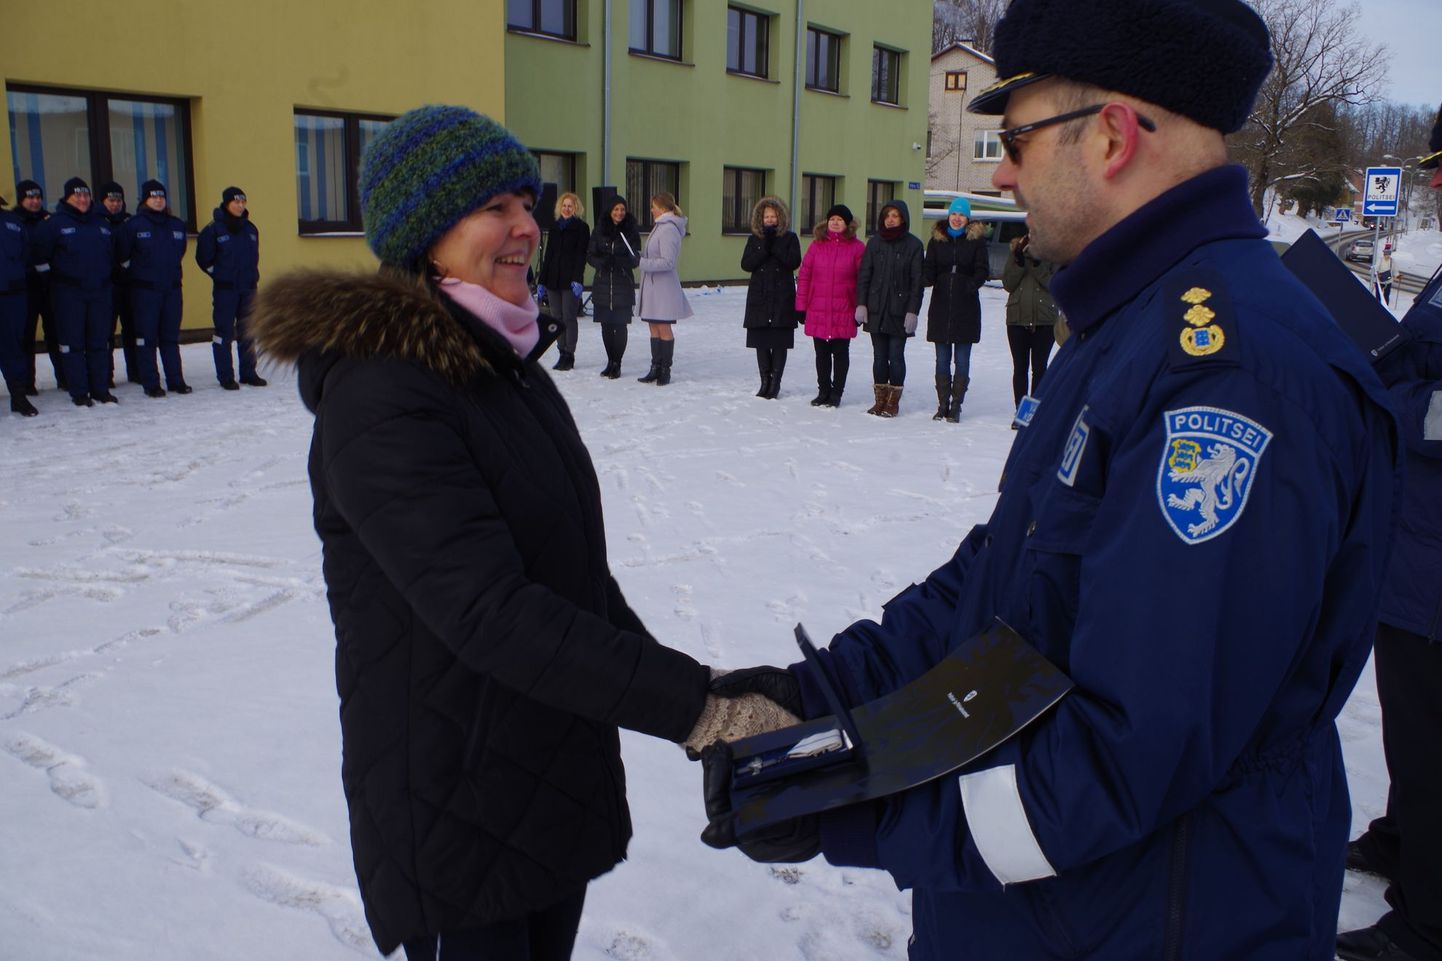 Piduliku rivistusega Põlva politseimaja ees edutati ja tänati tublimaid Põlvamaa politseinikke. 10 aasta teenistusristi sai vanemspetsialist Piret Tenso.